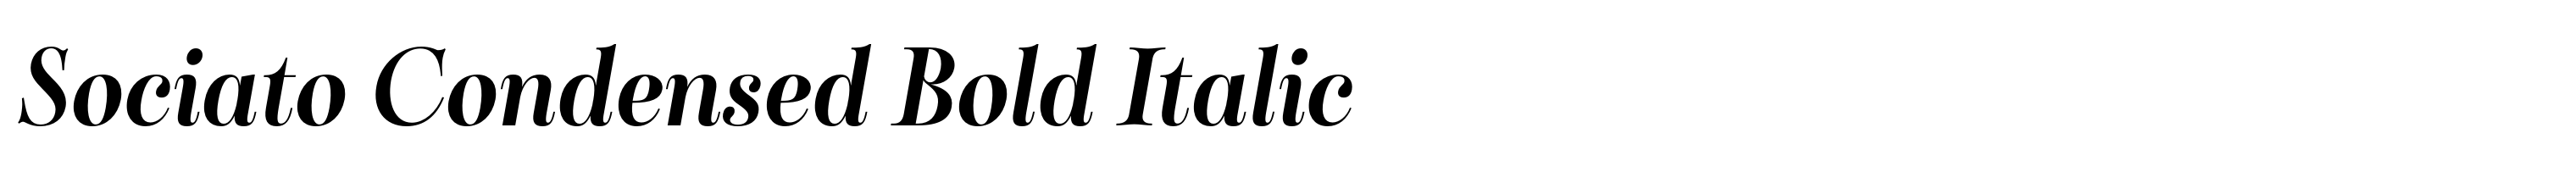 Sociato Condensed Bold Italic